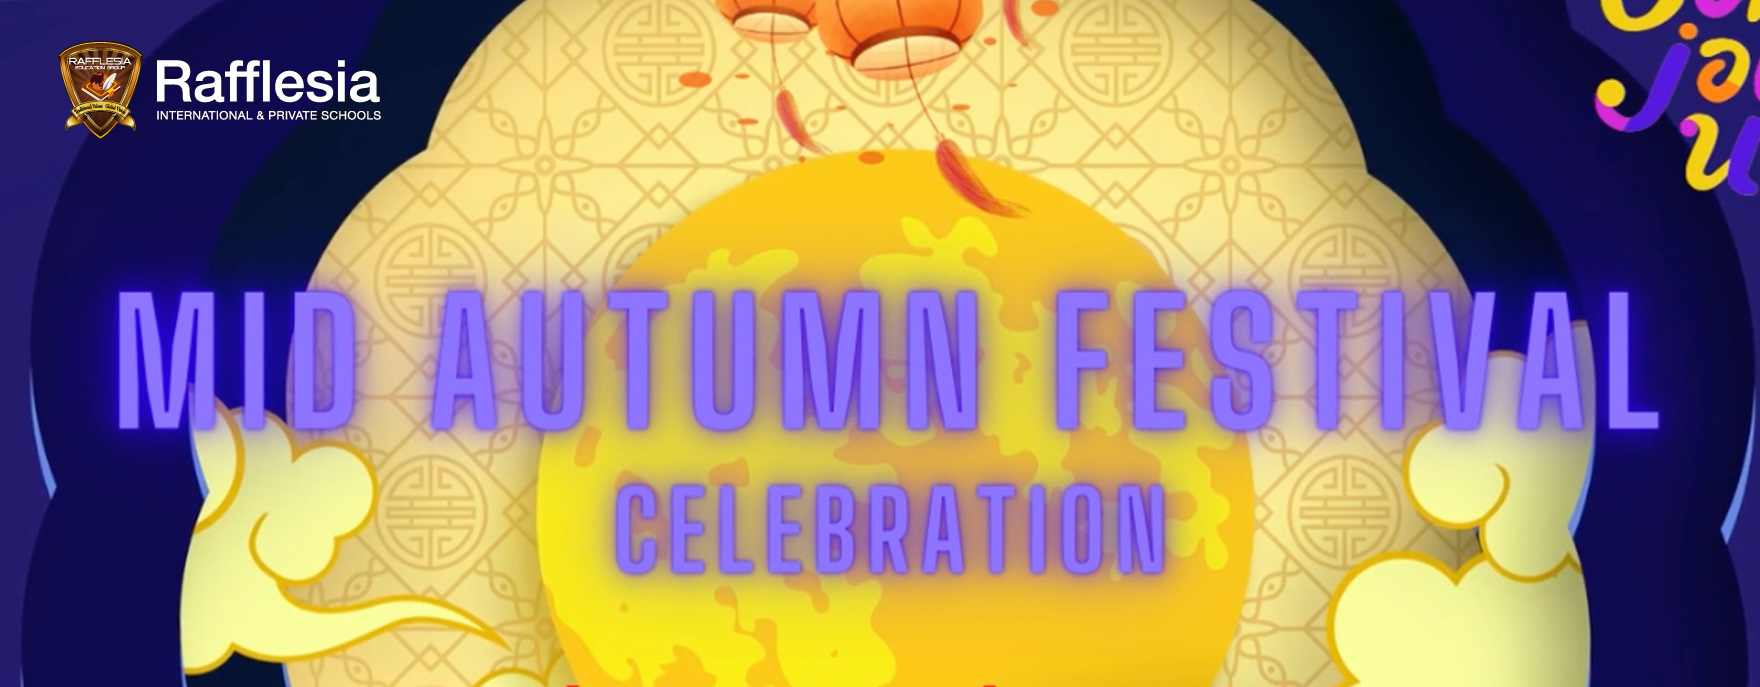 Mid Autumn Festival 